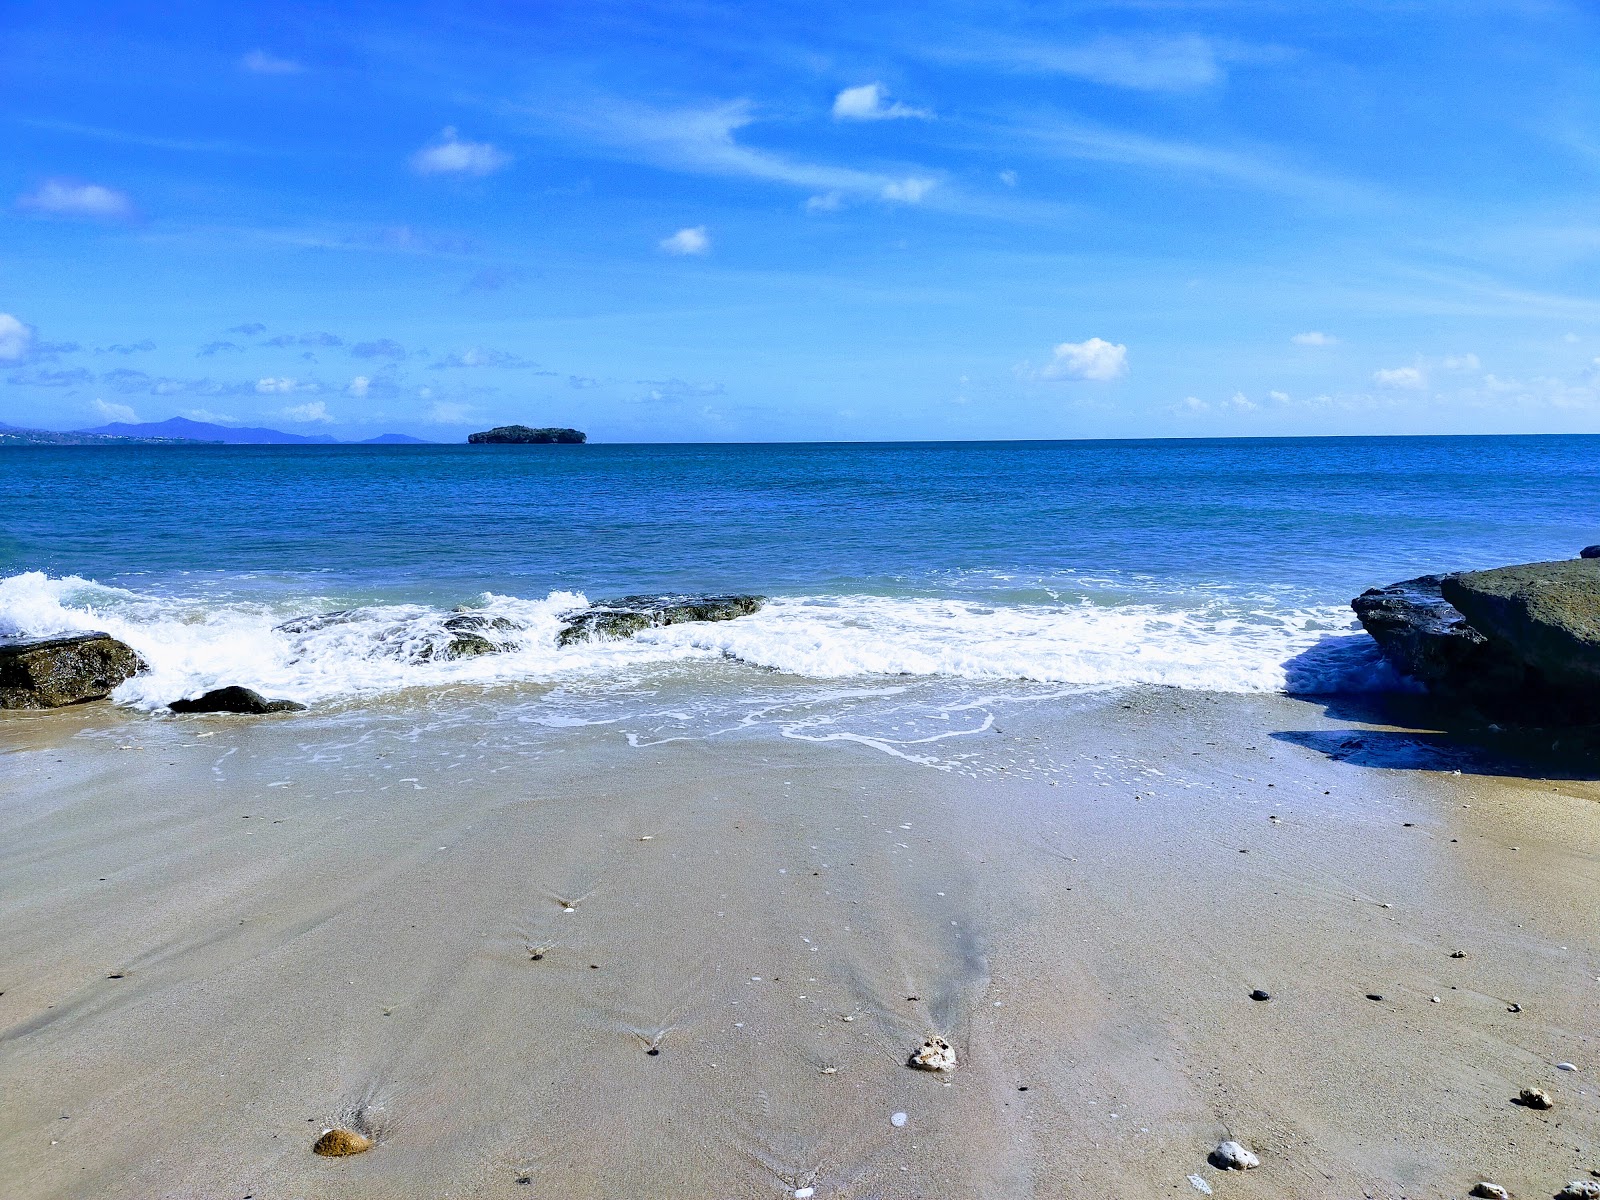 Fotografie cu Trevani Beach - locul popular printre cunoscătorii de relaxare